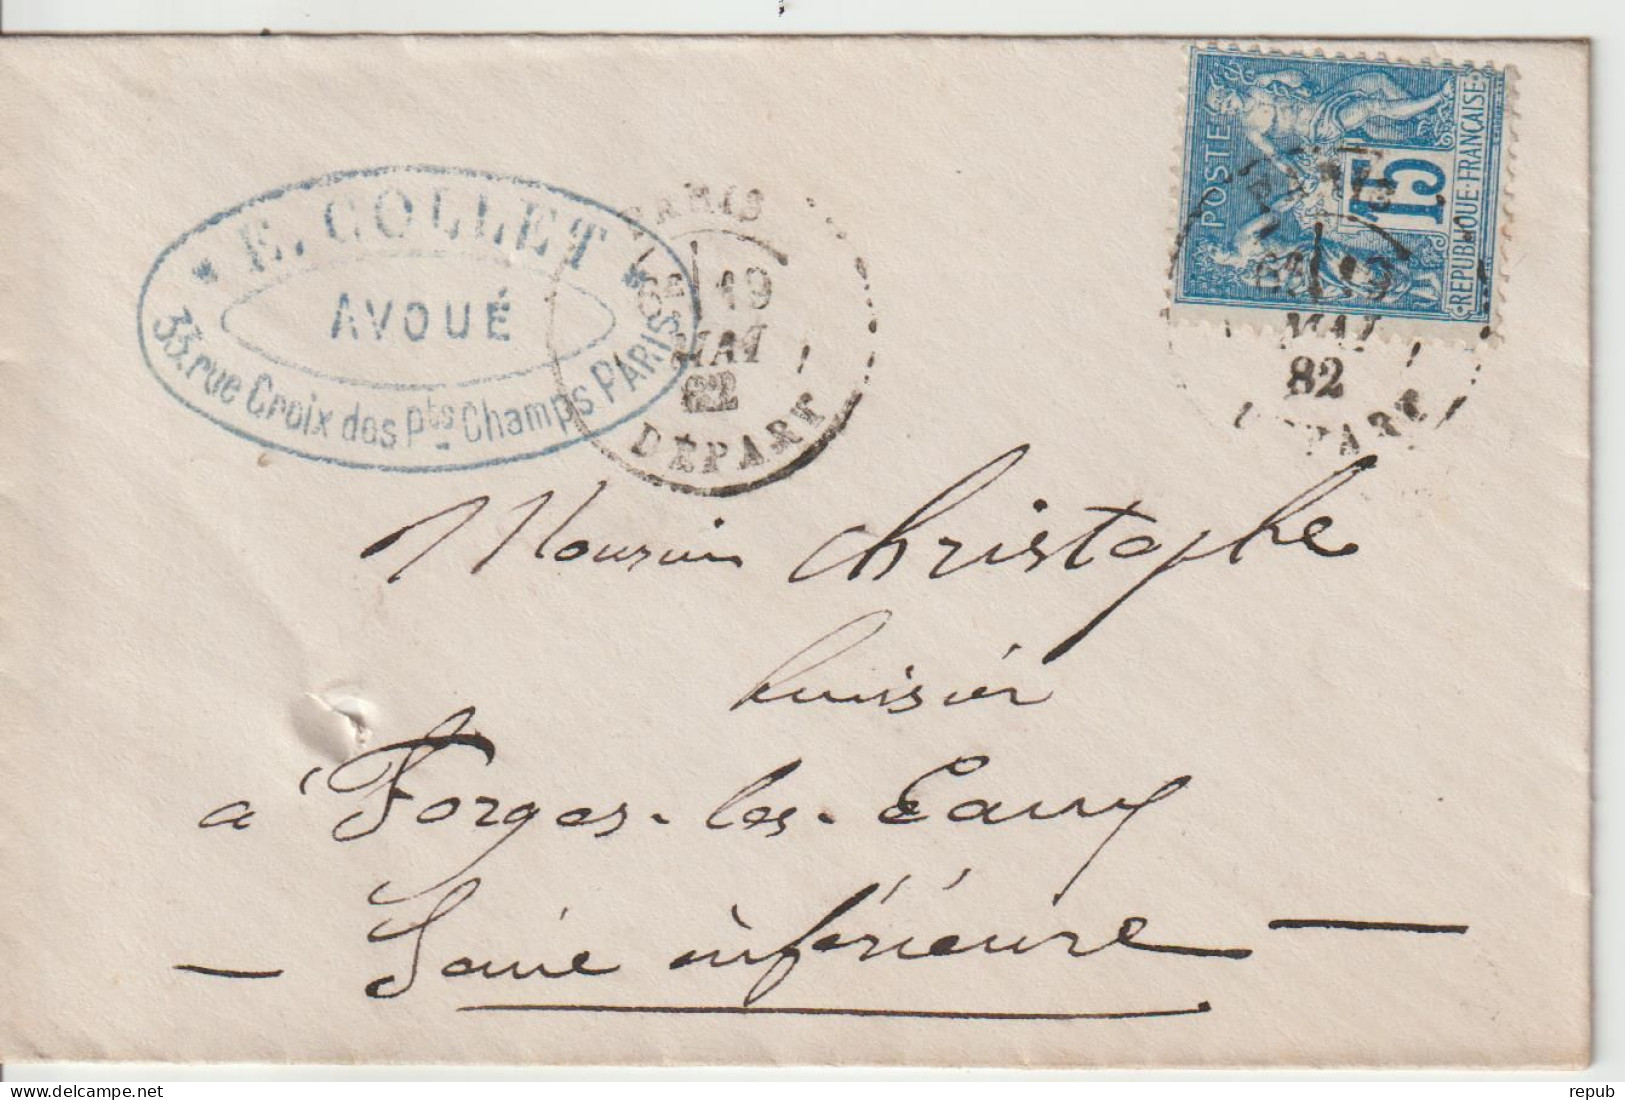 France Lettre 1882 De Paris Départ Pour Forges (76) - 1877-1920: Semi-Moderne